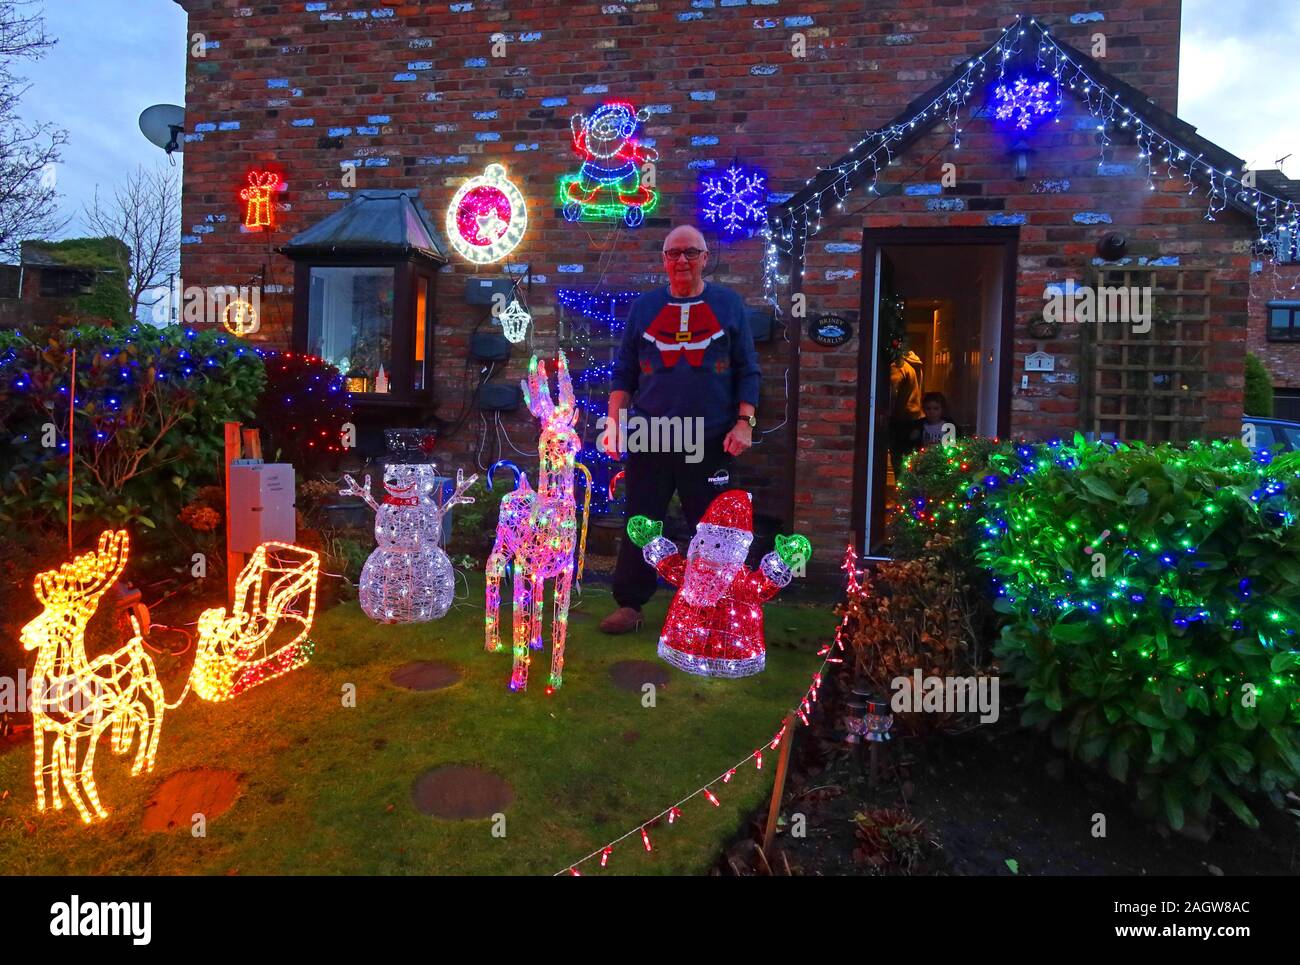 Fier résident et des lumières de Noël, Bellhouse Lane, Grappenhall, Warrington, Cheshire, Angleterre, Royaume-Uni, WA4 2SG Banque D'Images